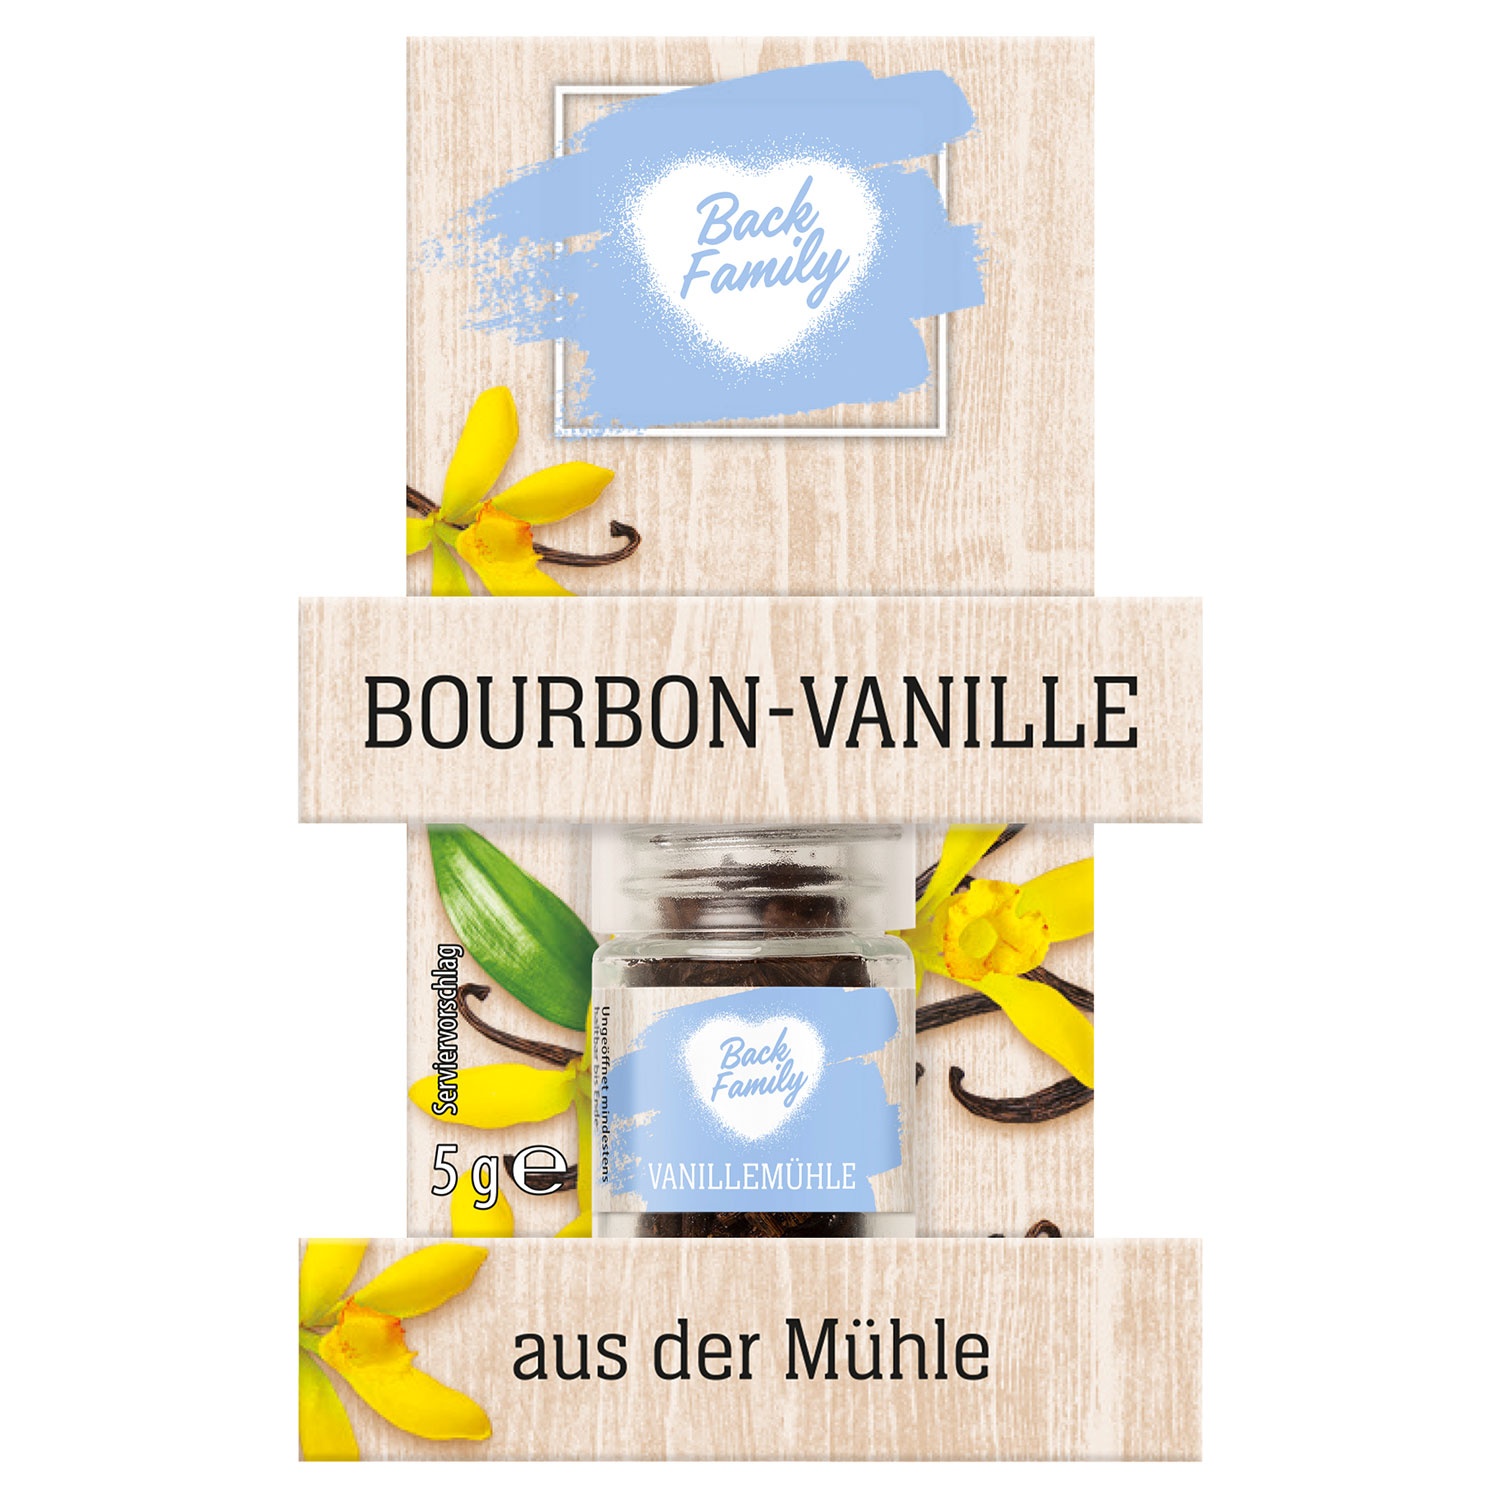 BACK FAMILY Bourbon-Vanille-Mühle 5 g